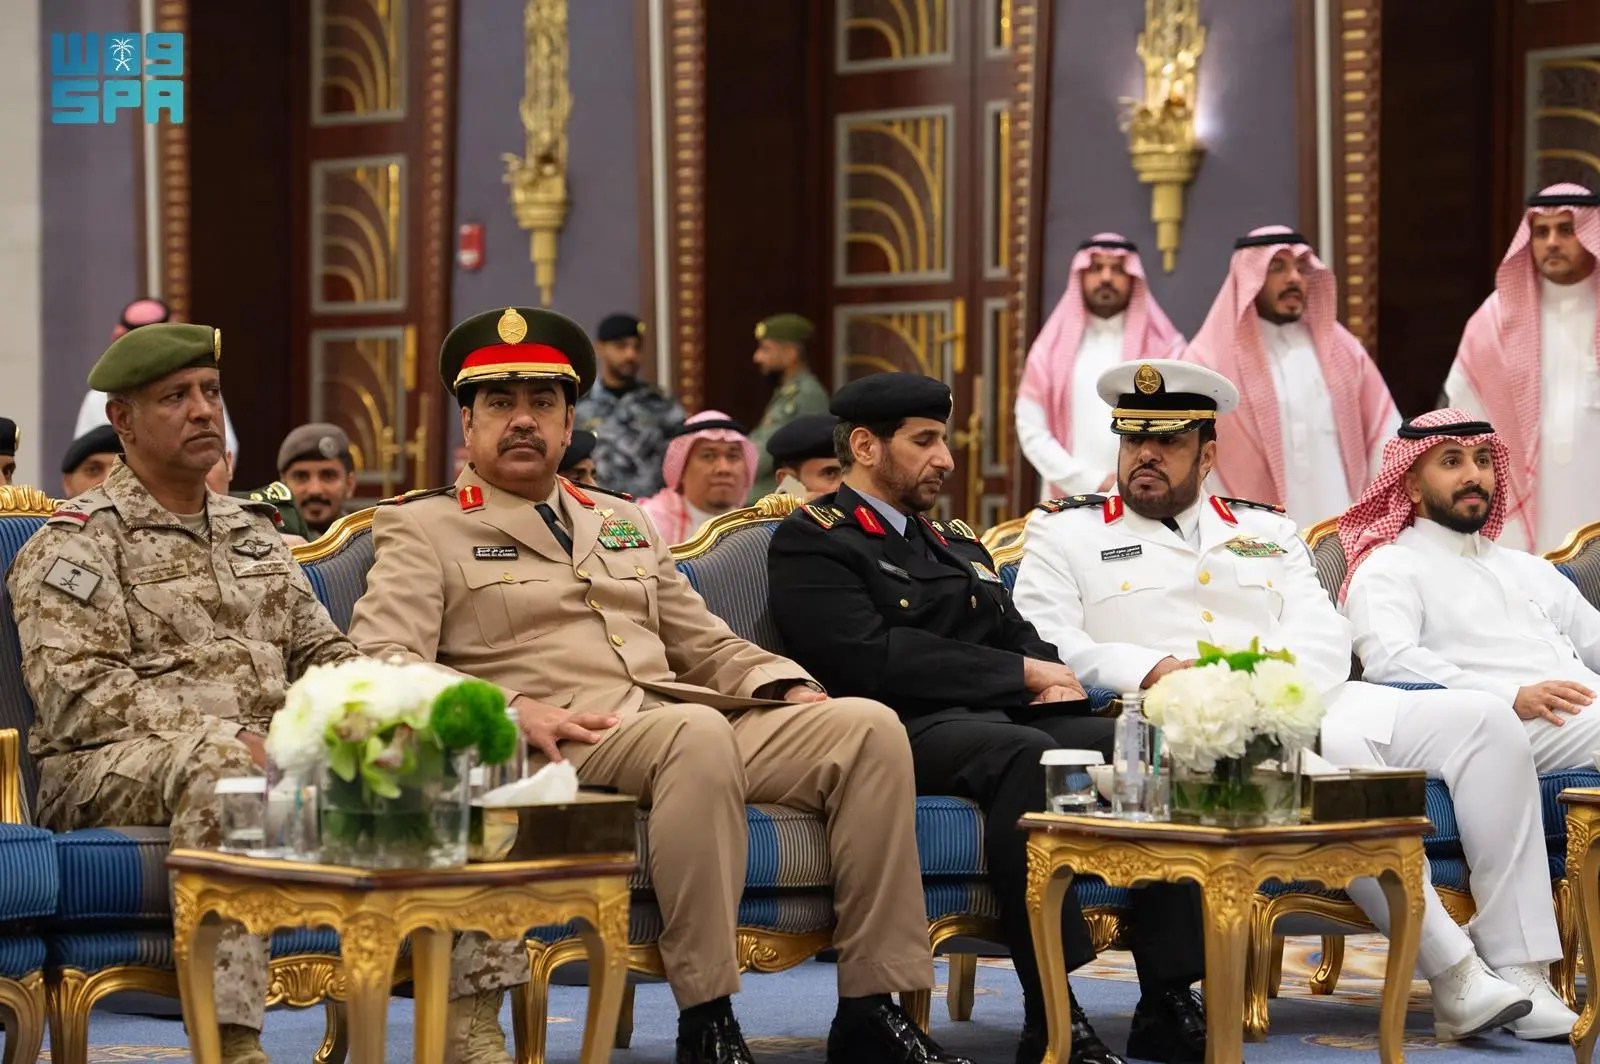 الأمير سعود بن مشعل يستقبل المهنئين بمناسبة تعيينه نائبًا لأمير منطقة مكة المكرمة